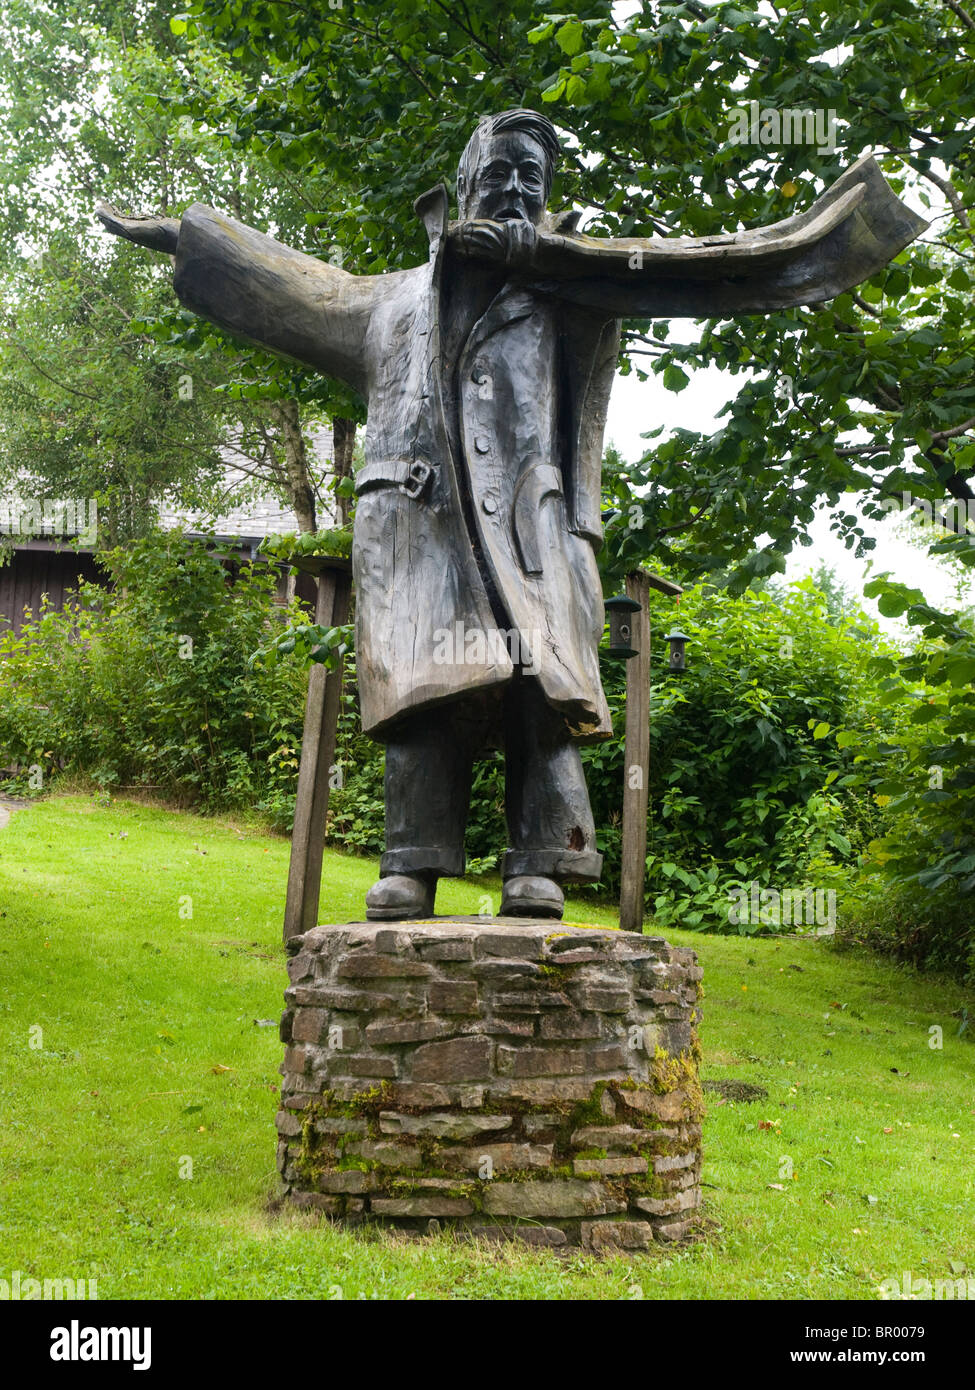 Una estatua de bronce de un minero en el Centro de Visitantes del Parque Forestal de Afan, Neath Port Talbot South Wales UK Foto de stock